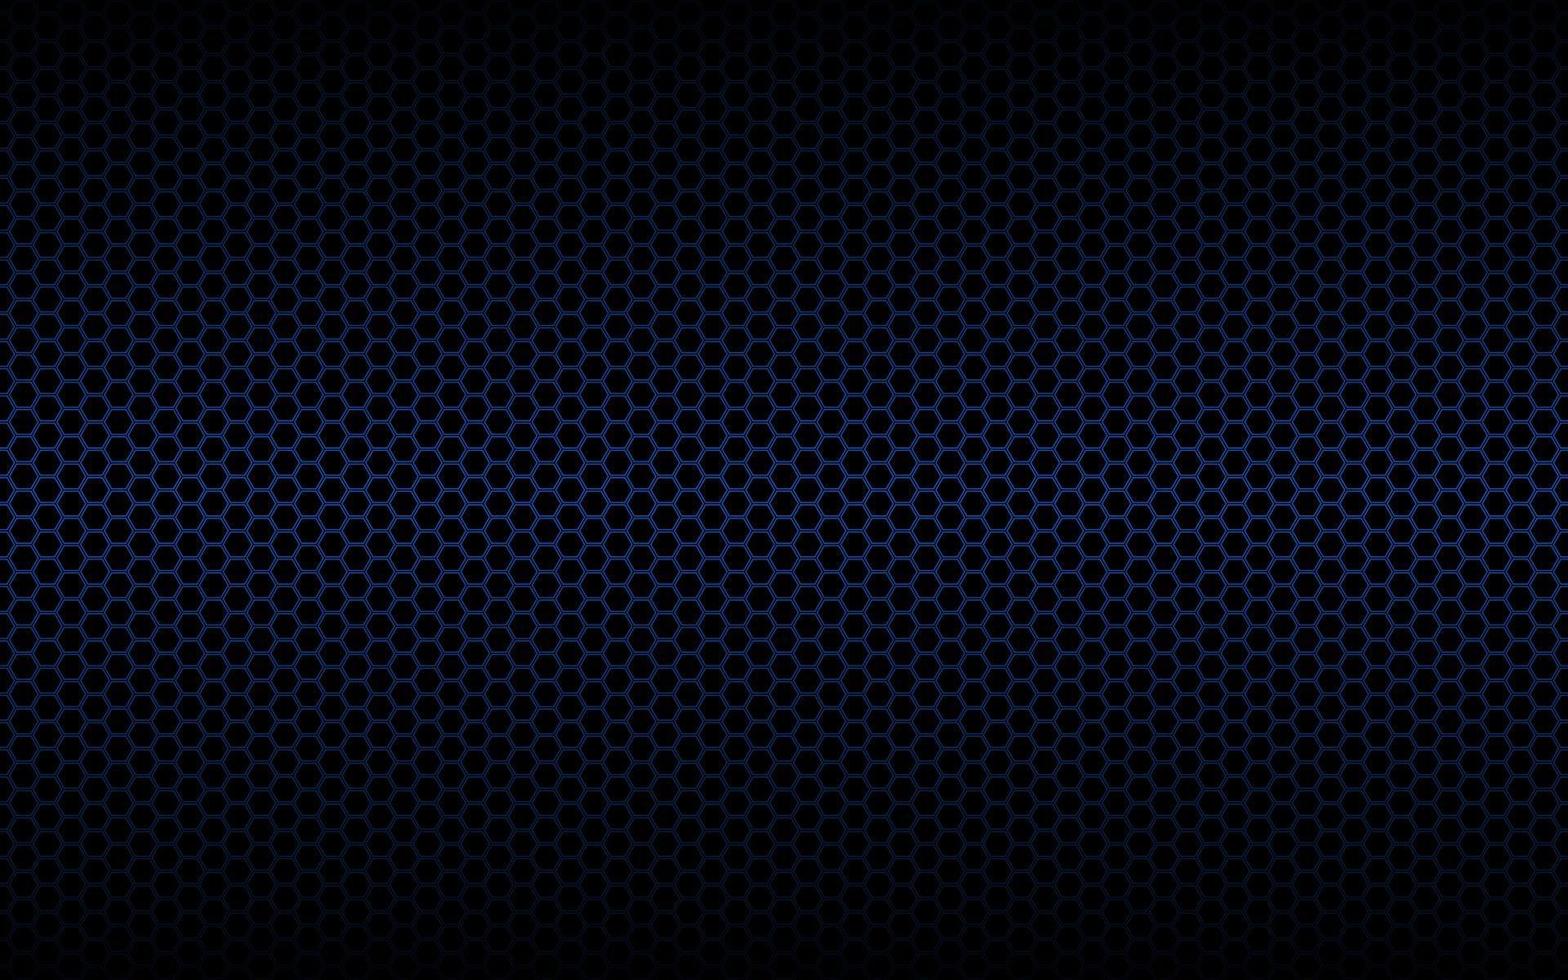 Fondo oscuro abstracto con rejilla poligonal azul vector abstracto diseño creativo moderno ilustración vectorial colorida